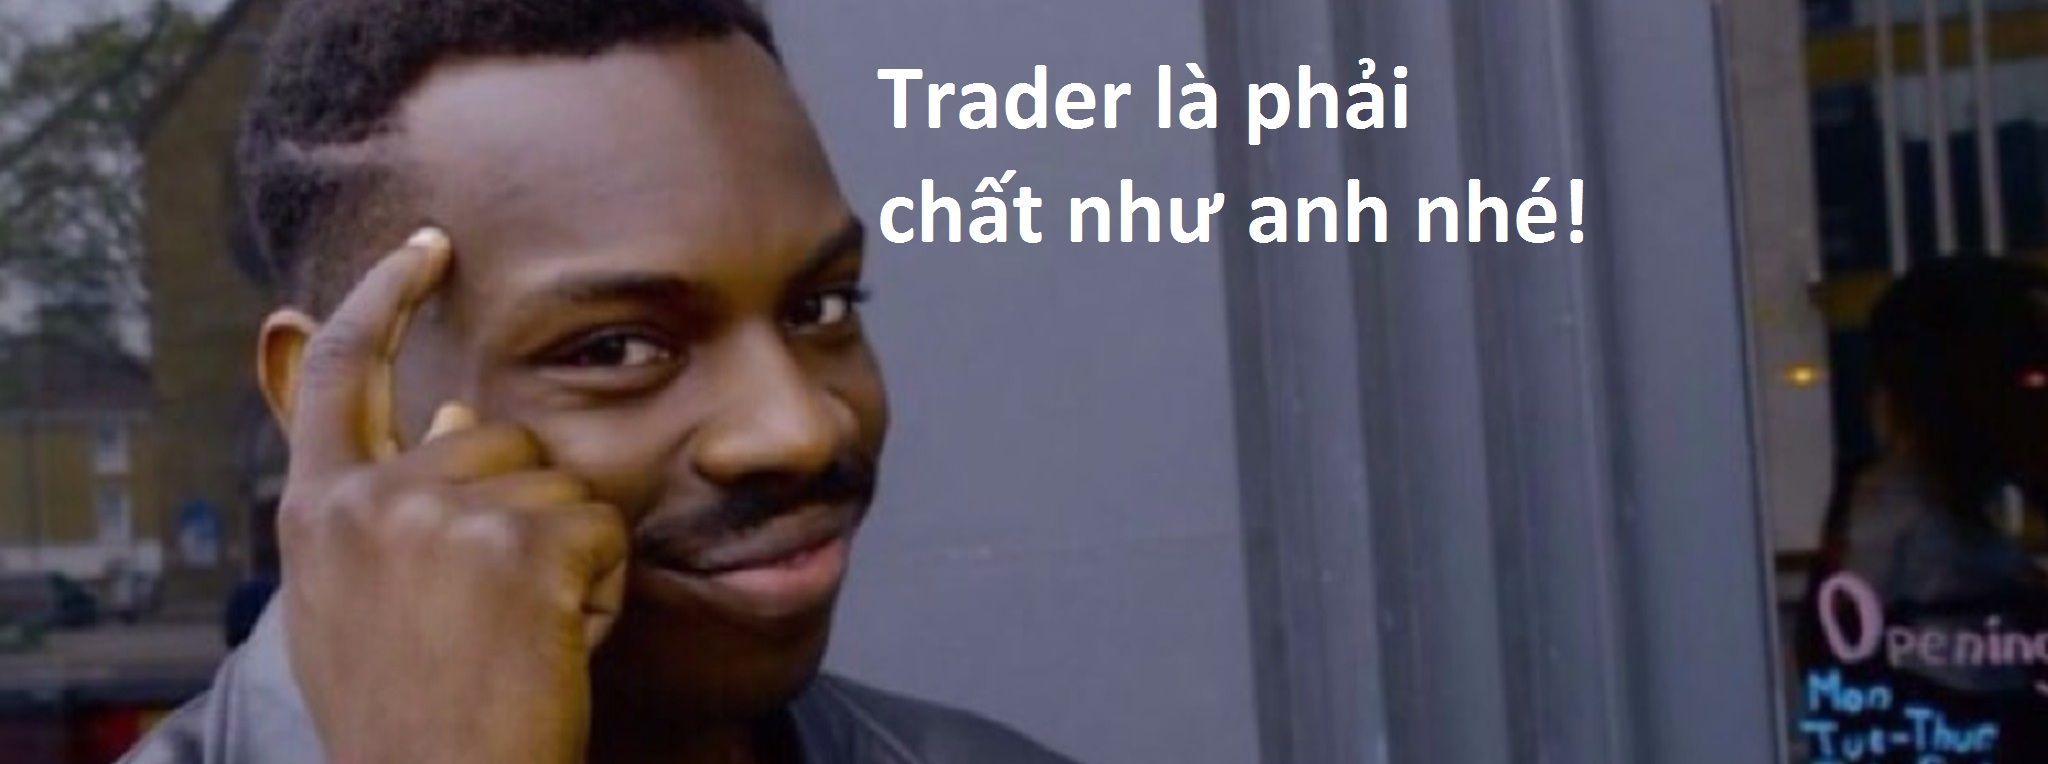 [Vui vẻ] Trader là phải chất như vầy mới được